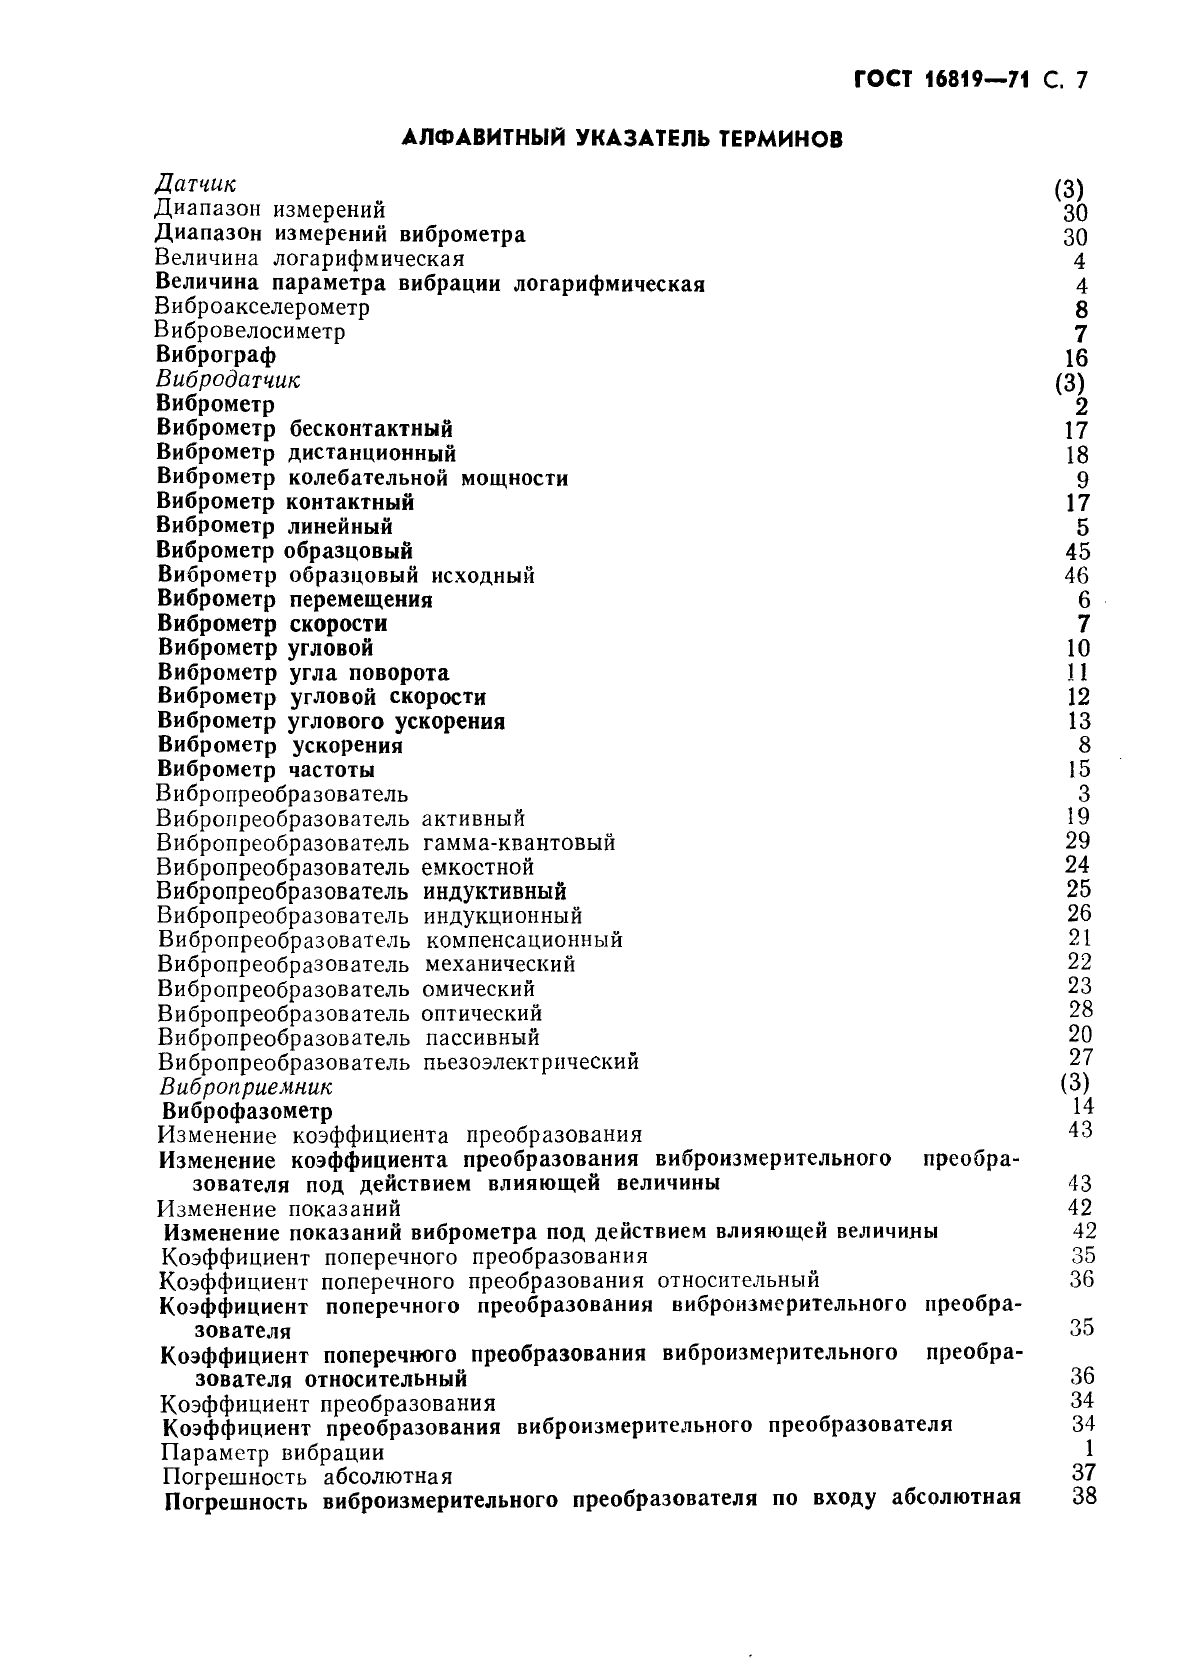 ГОСТ 16819-71 Приборы виброизмерительные. Термины и определения (фото 8 из 10)